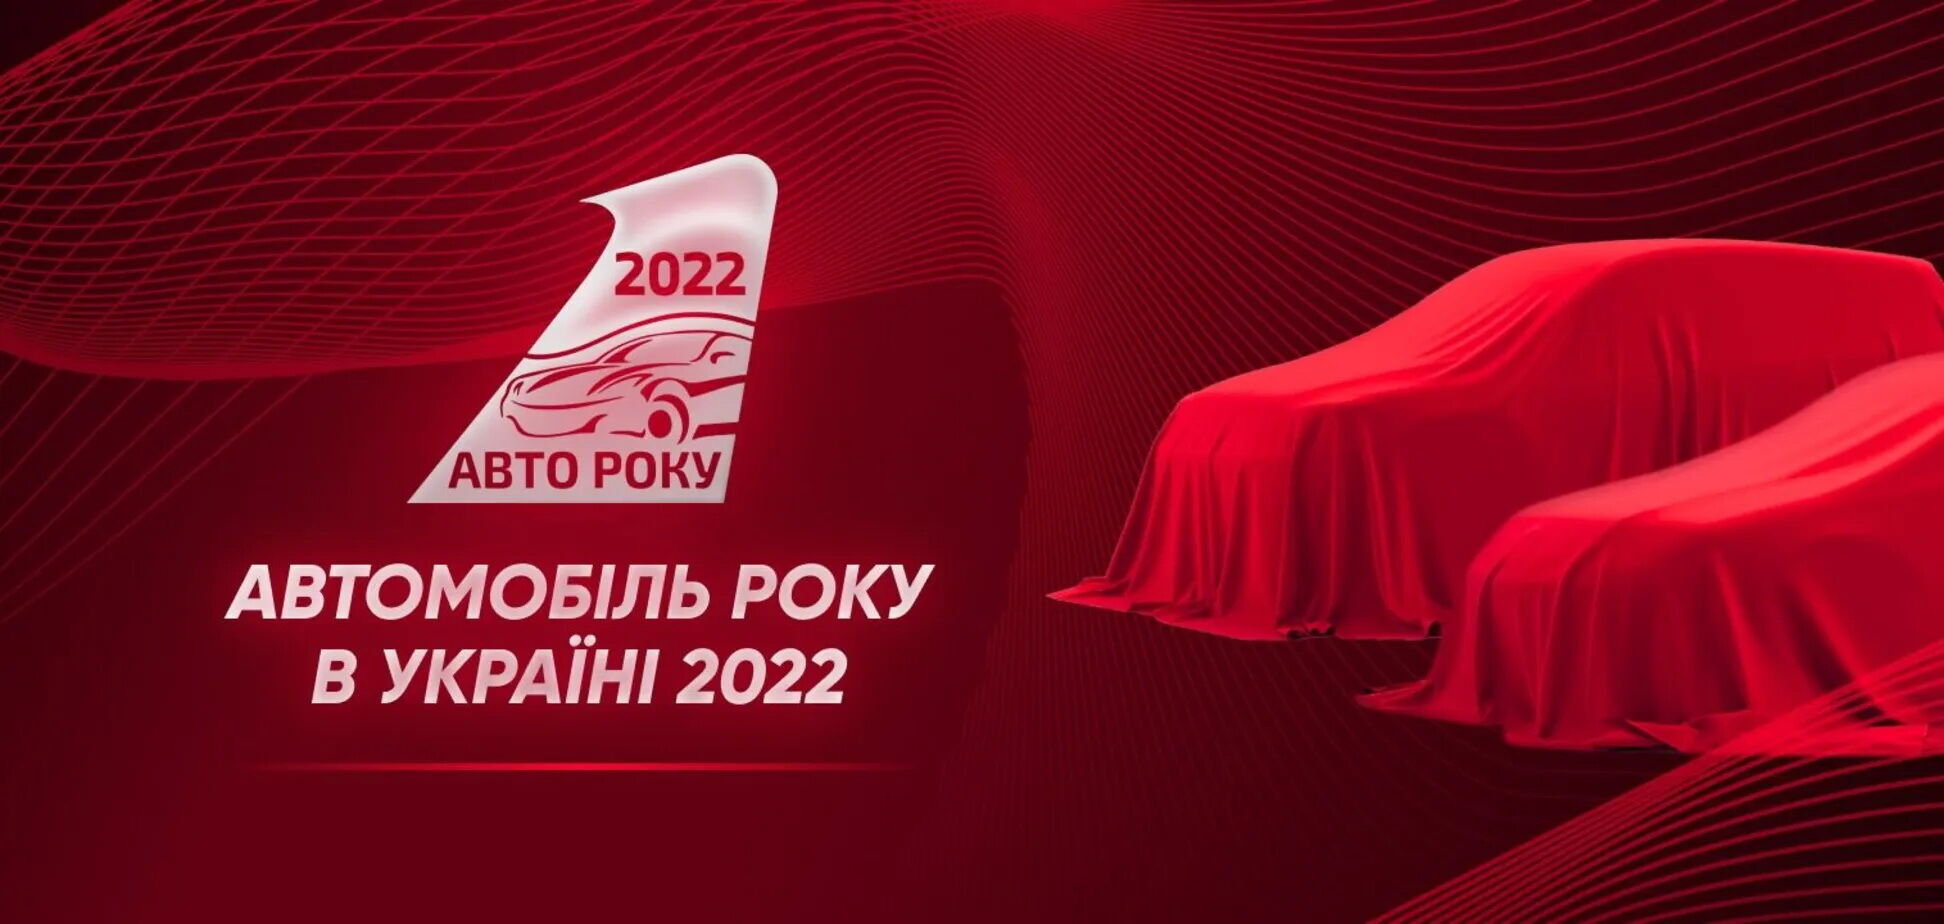 Стартовало голосование за 'Автомобиль года' в Украине 2022